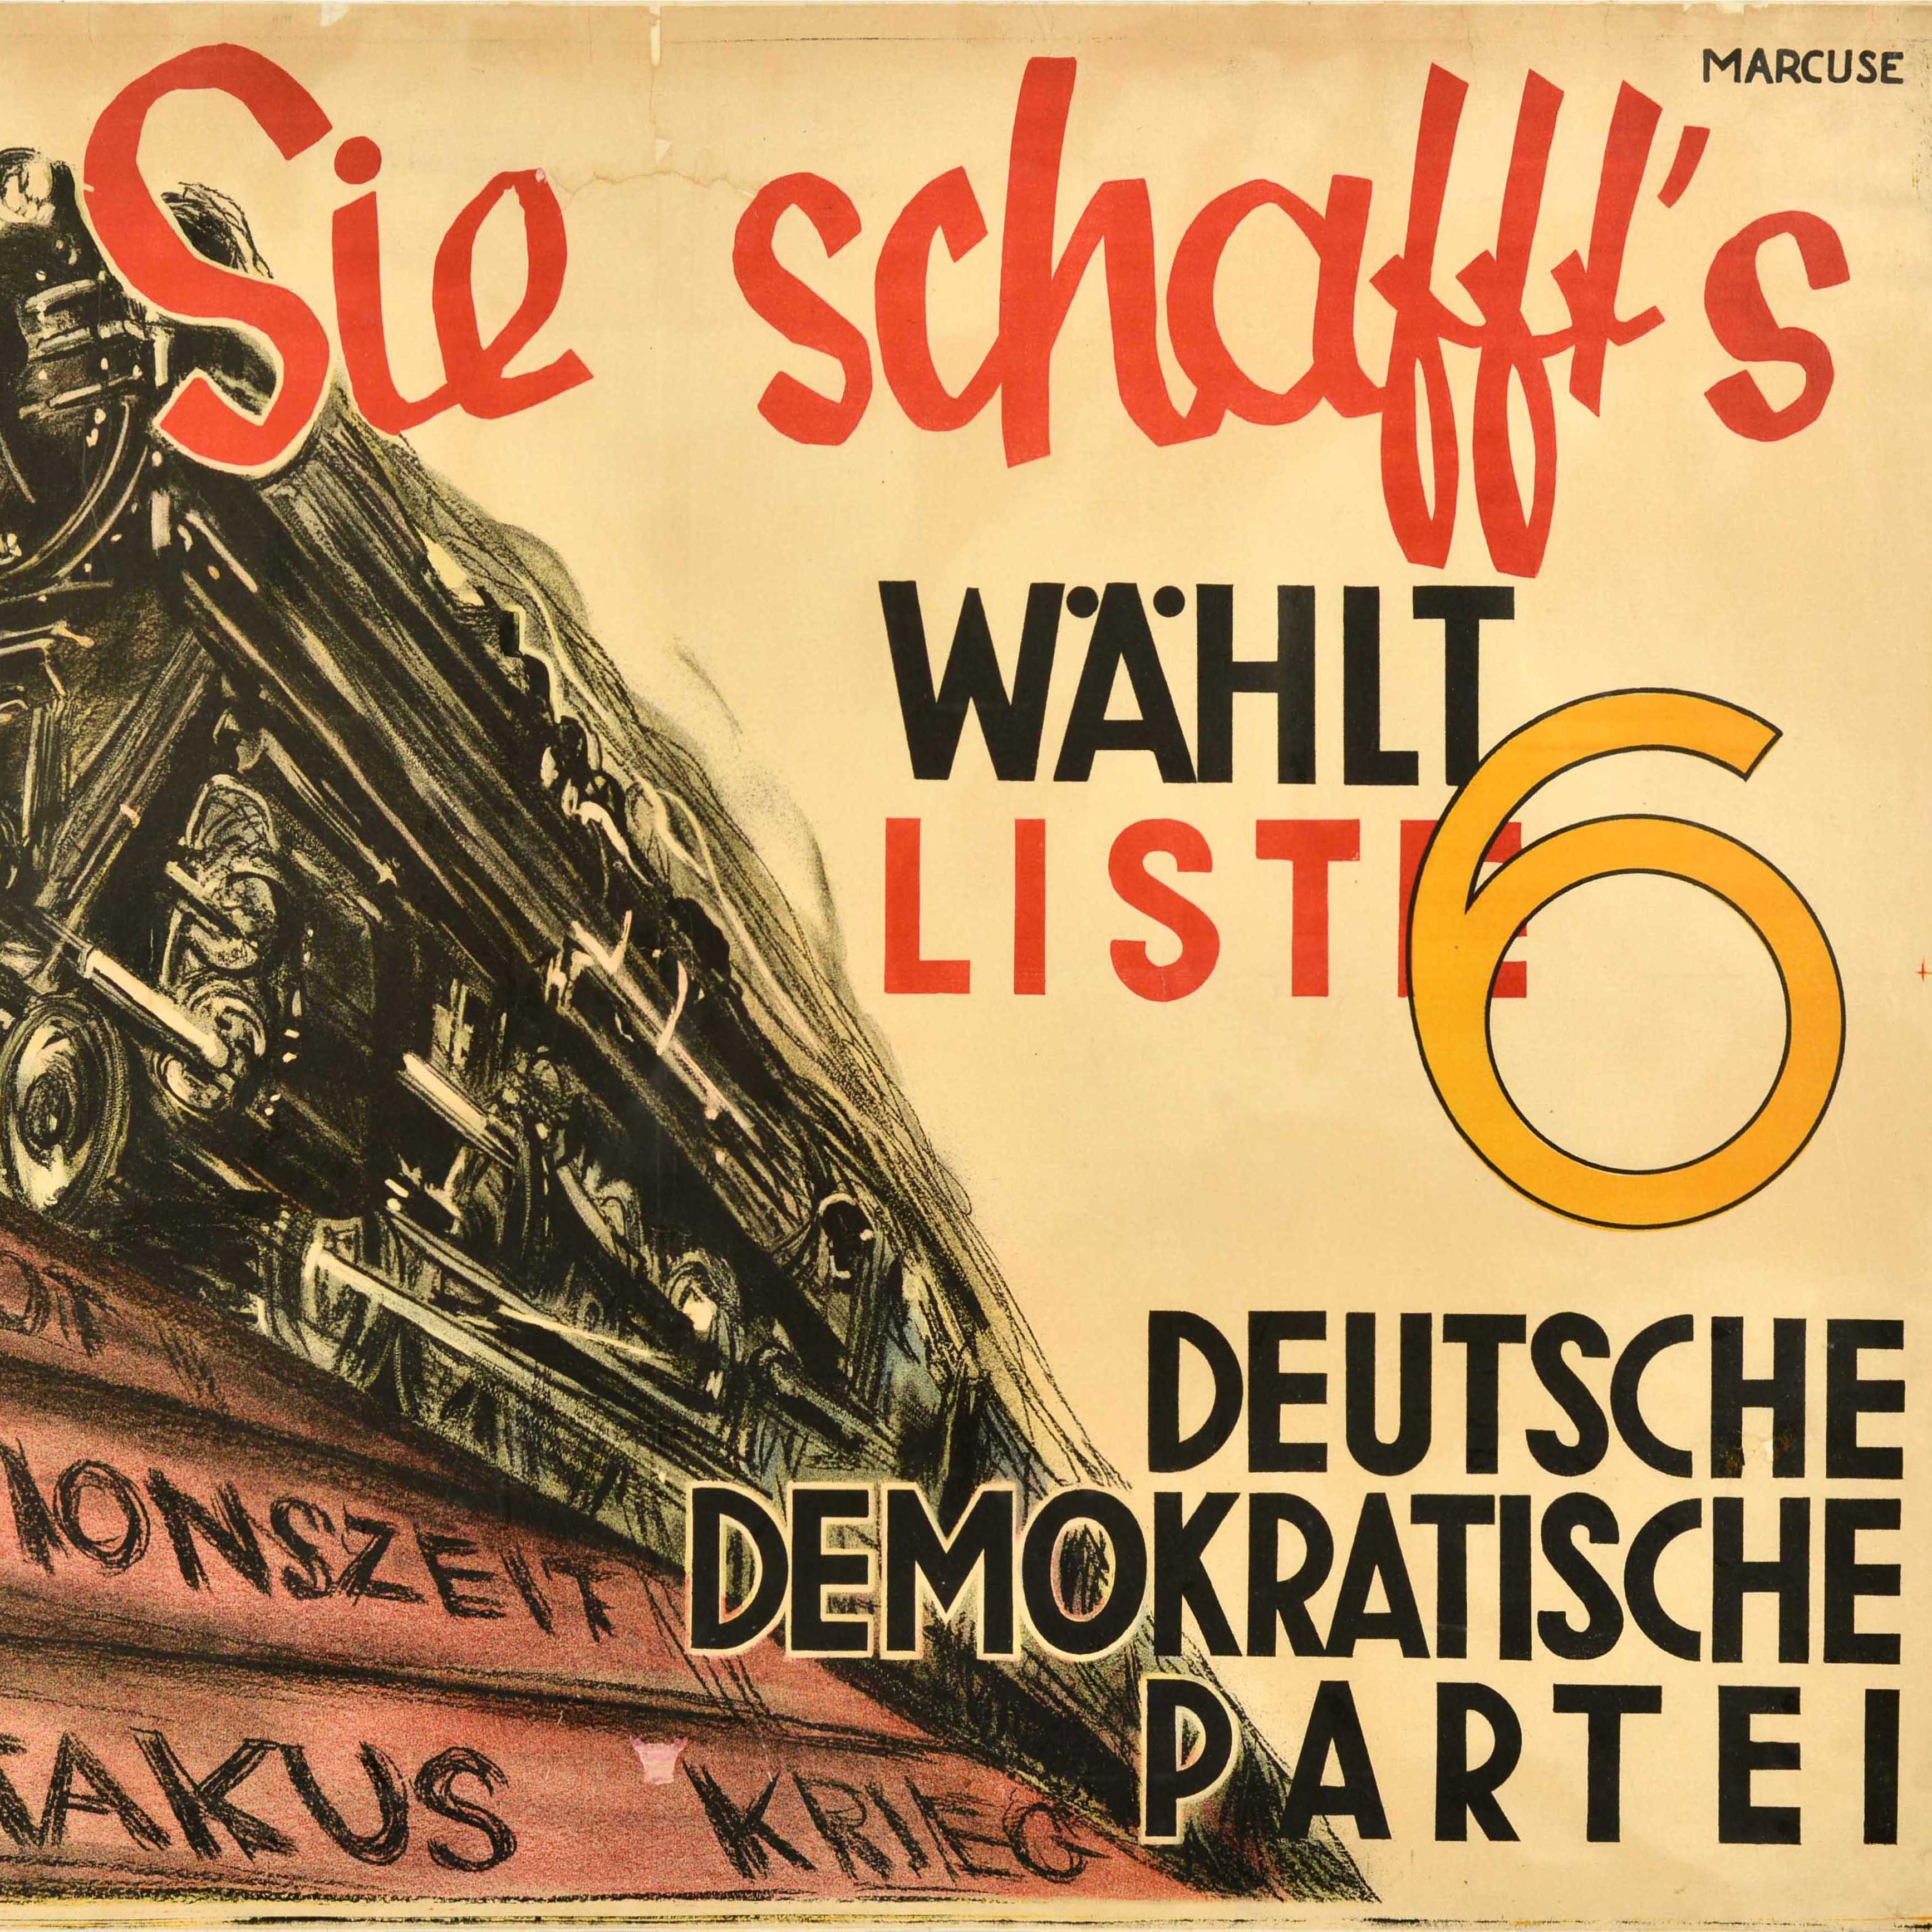 Originales antikes Propagandawahlplakat für die Deutsche Demokratische Partei - mit einem dynamischen Design, das einen Dampfzug zeigt, der mit hoher Geschwindigkeit auf einem Gleis fährt, das auf Wohnungsnot Inflationzeit Spartakus Kreig verweist,